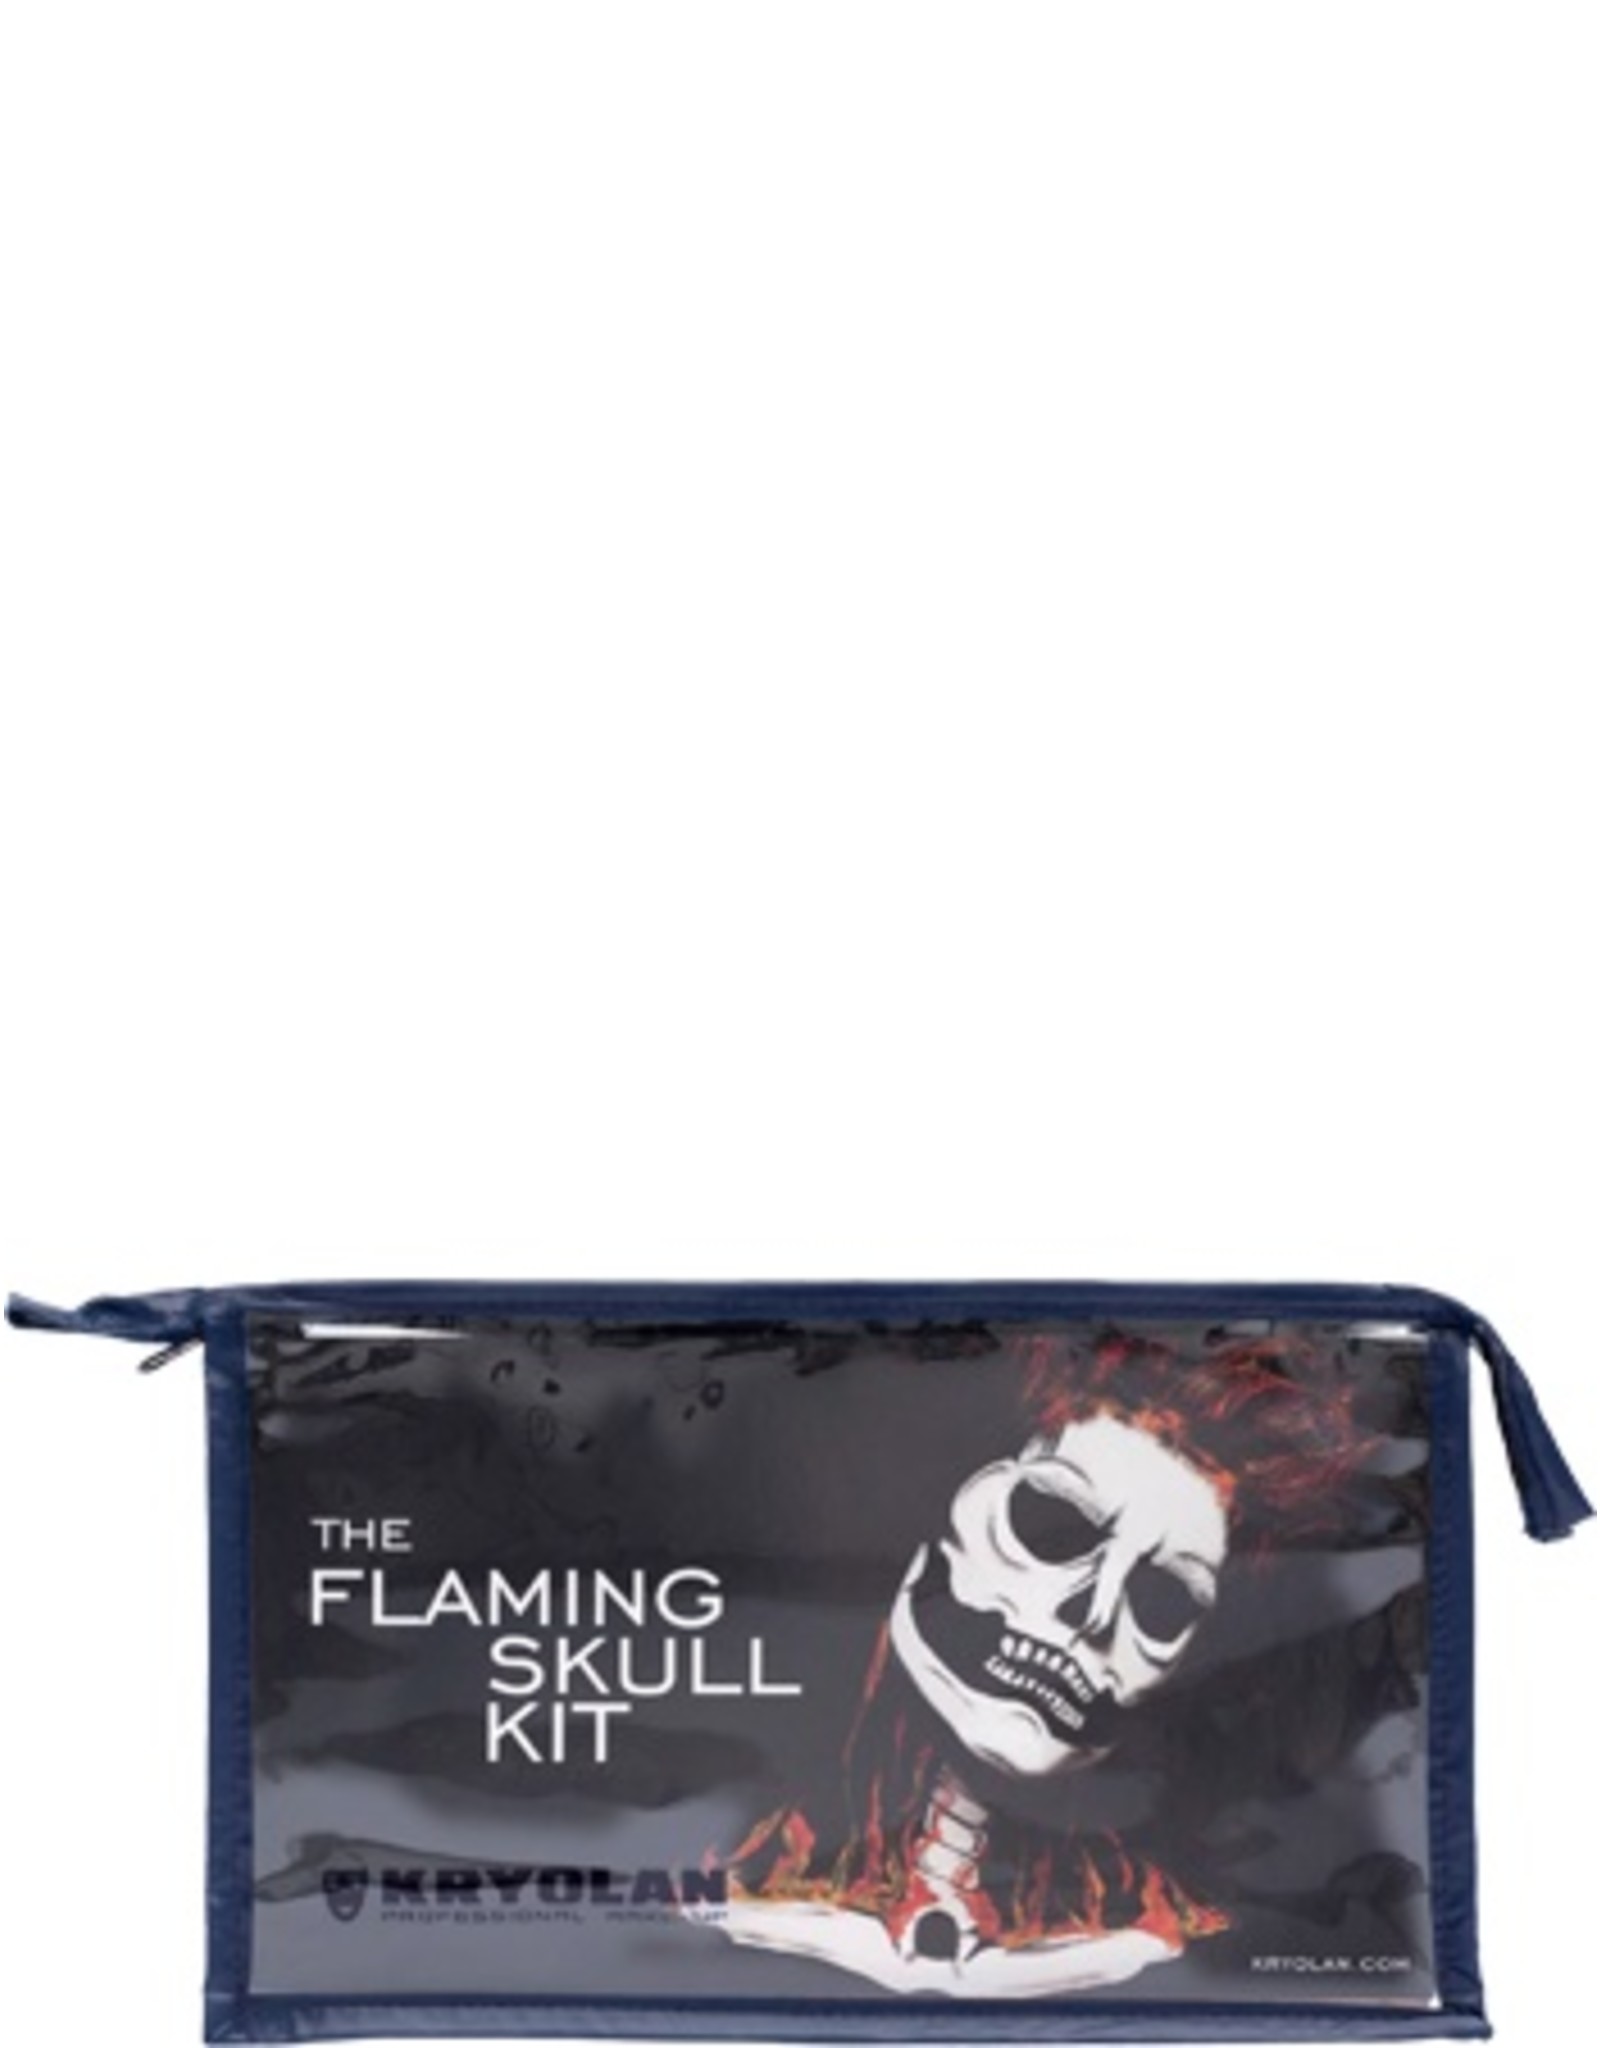 Kryolan The Flaming Skull Kit